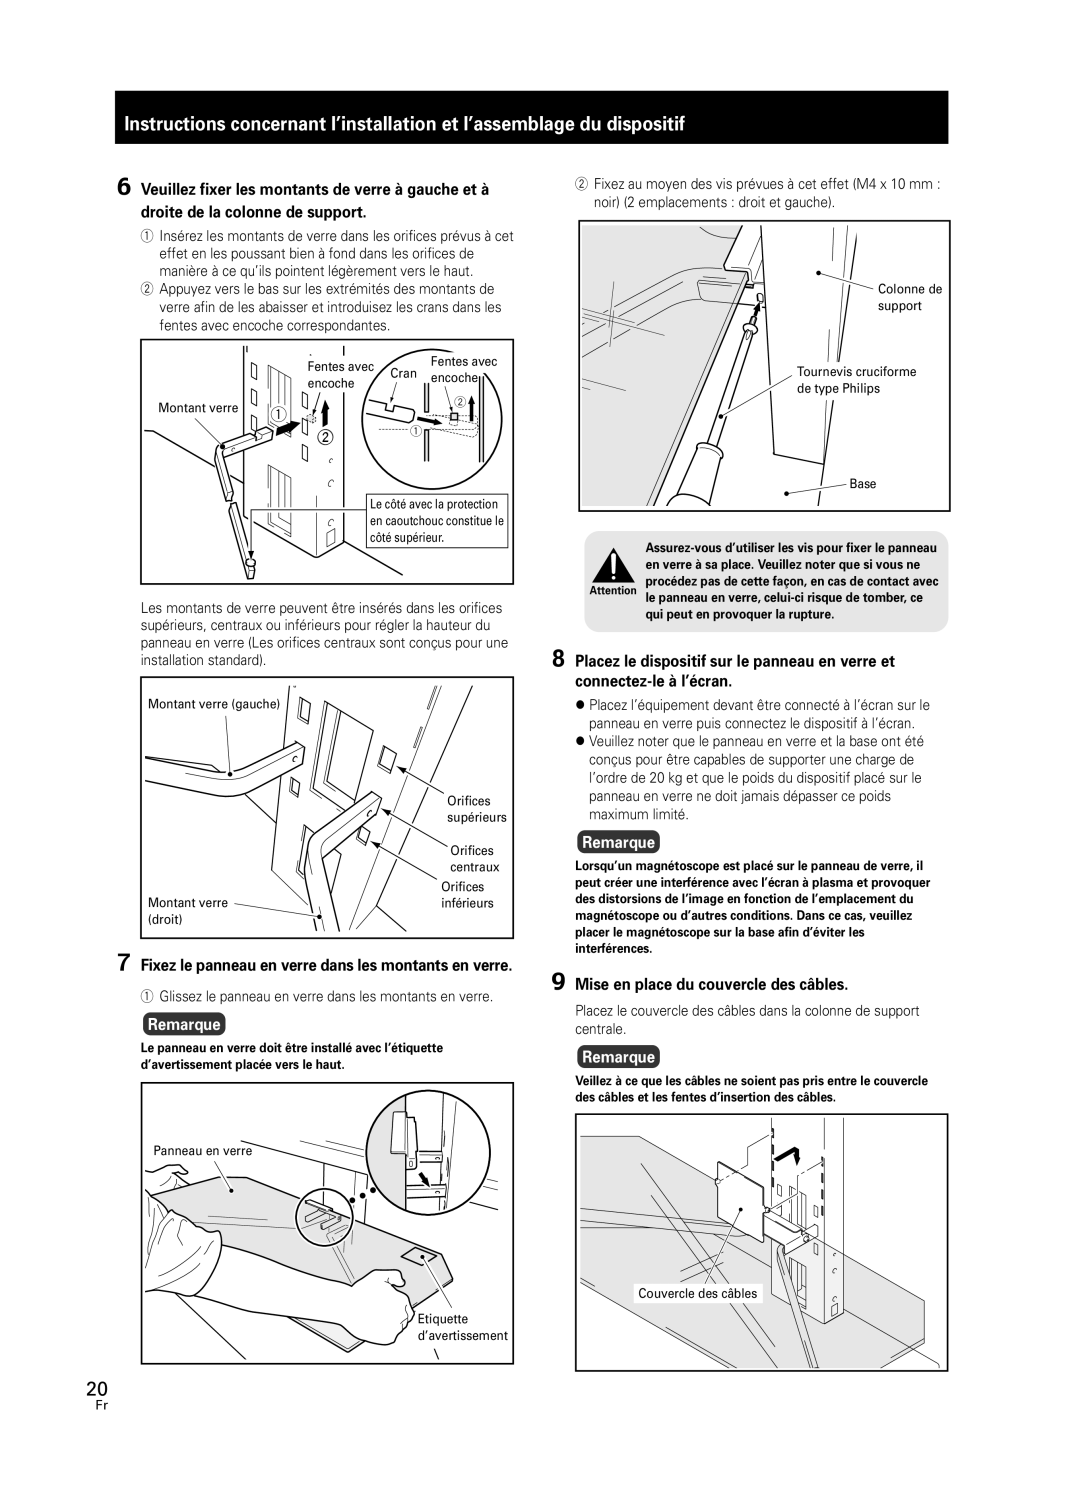 Pioneer PDK-FS05 manual Remarque, 9Mise en place du couvercle des câbles 